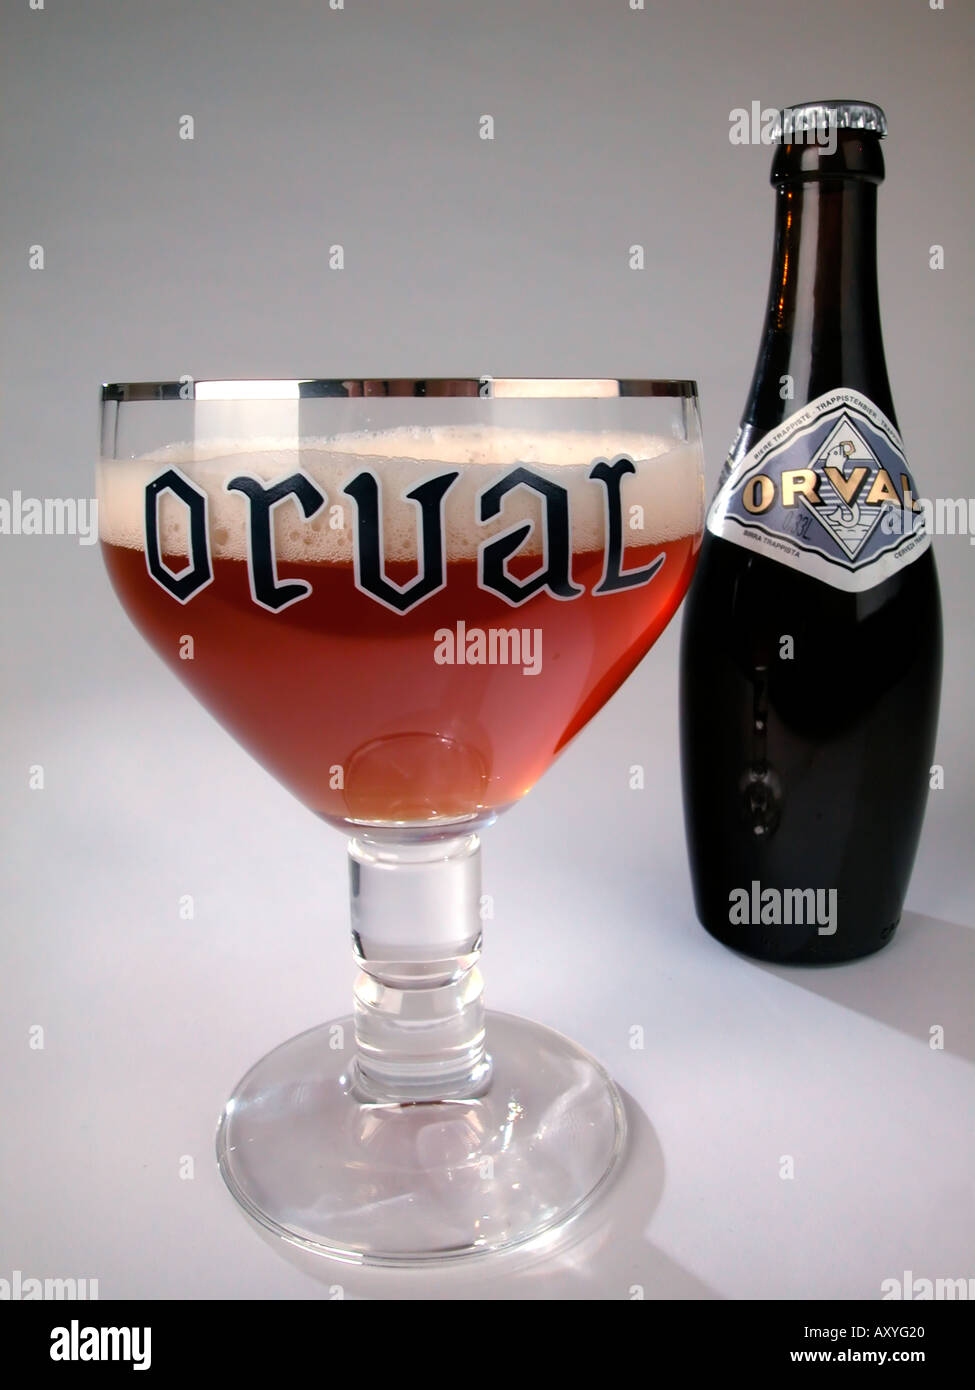 Bottiglia e bicchiere di Orval Trappist ale Florenville Belgio Foto stock -  Alamy